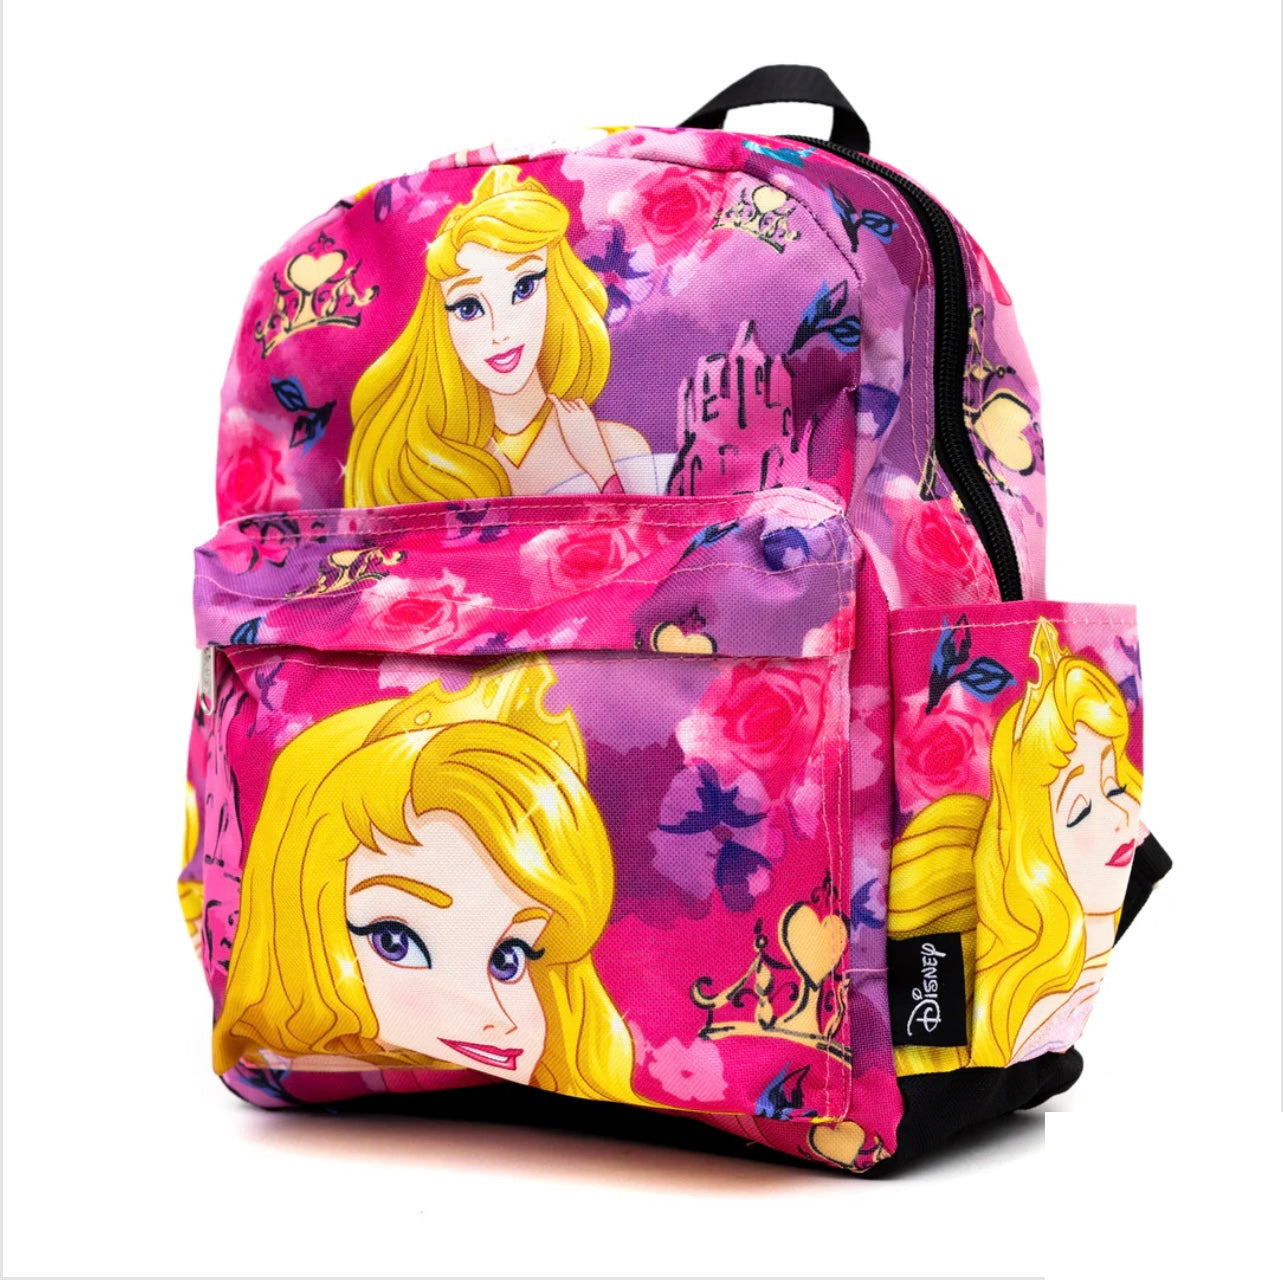 Aurora Fabric Backpack